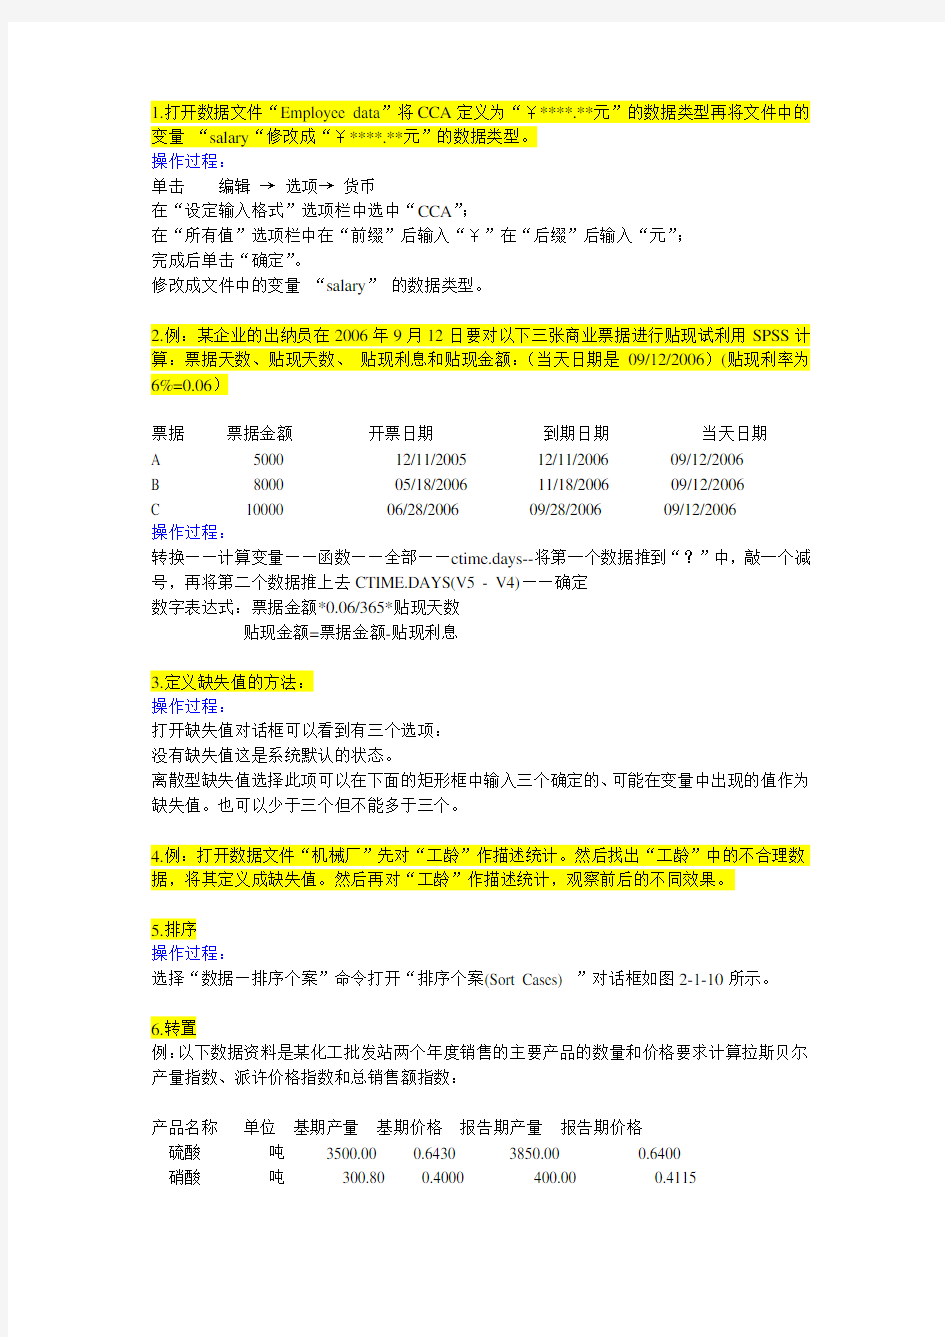 浙江财经SPSS金融分析软件复习笔记